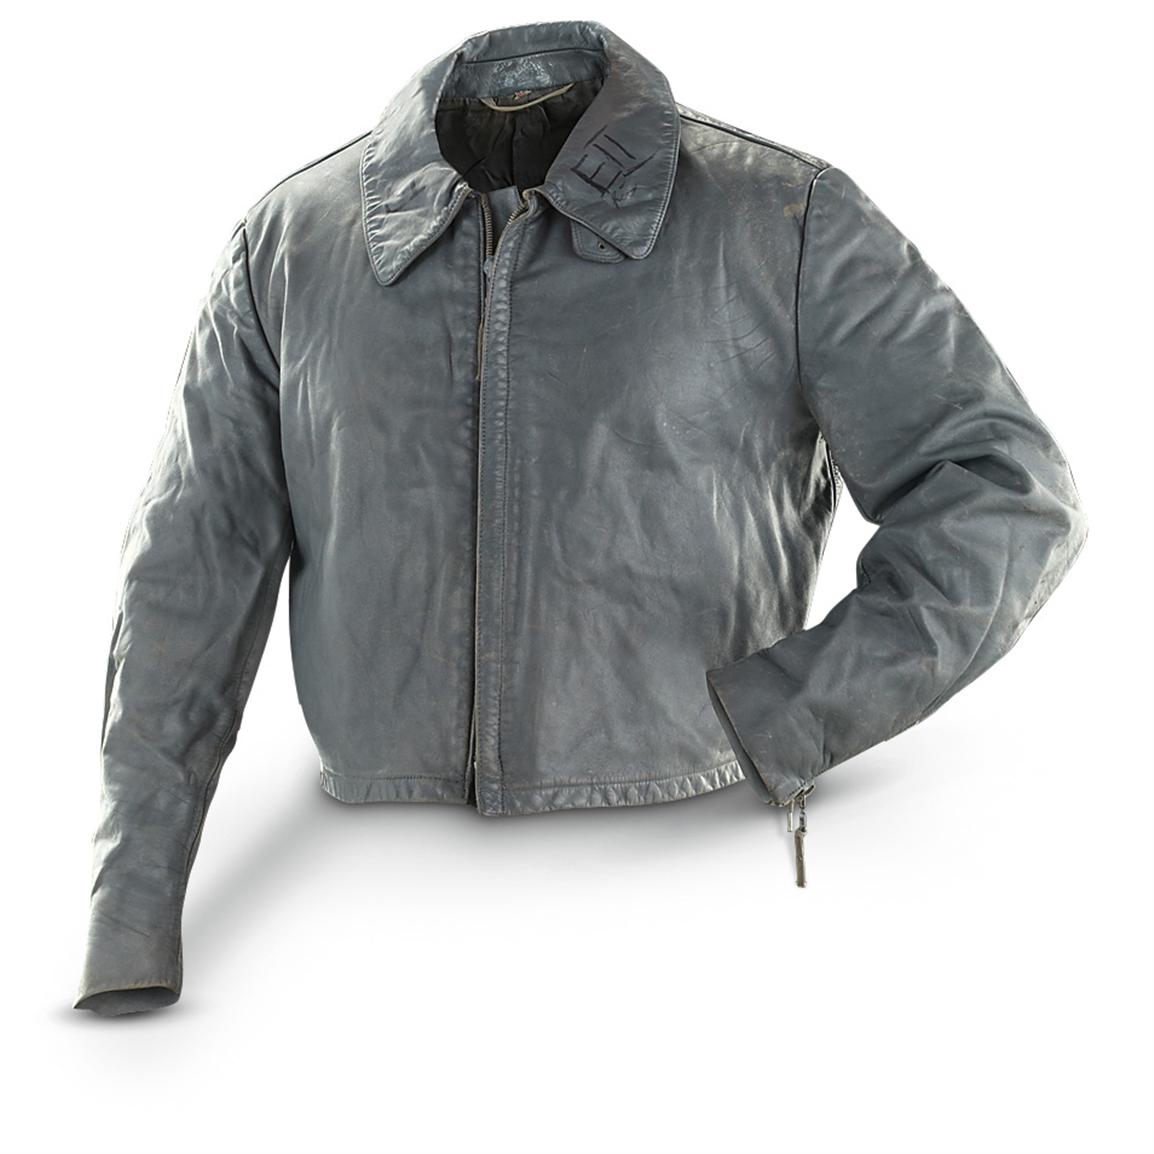 German Military Surplus Leather Jacket, Used - 421383, Uninsulated ...